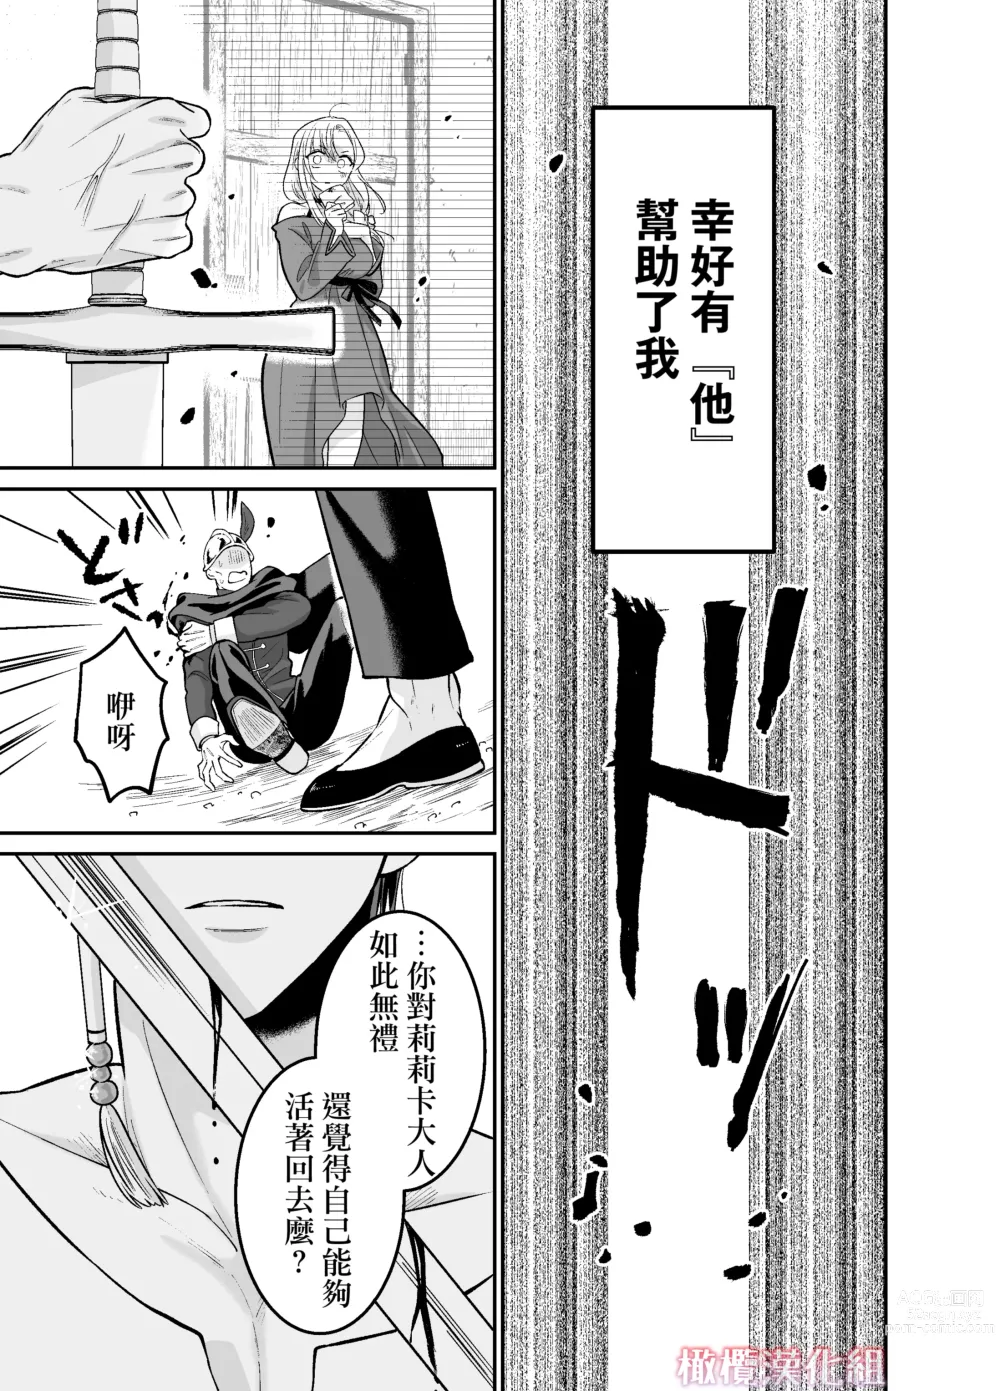 Page 8 of doujinshi 轉生魔女不知 從者的欲望